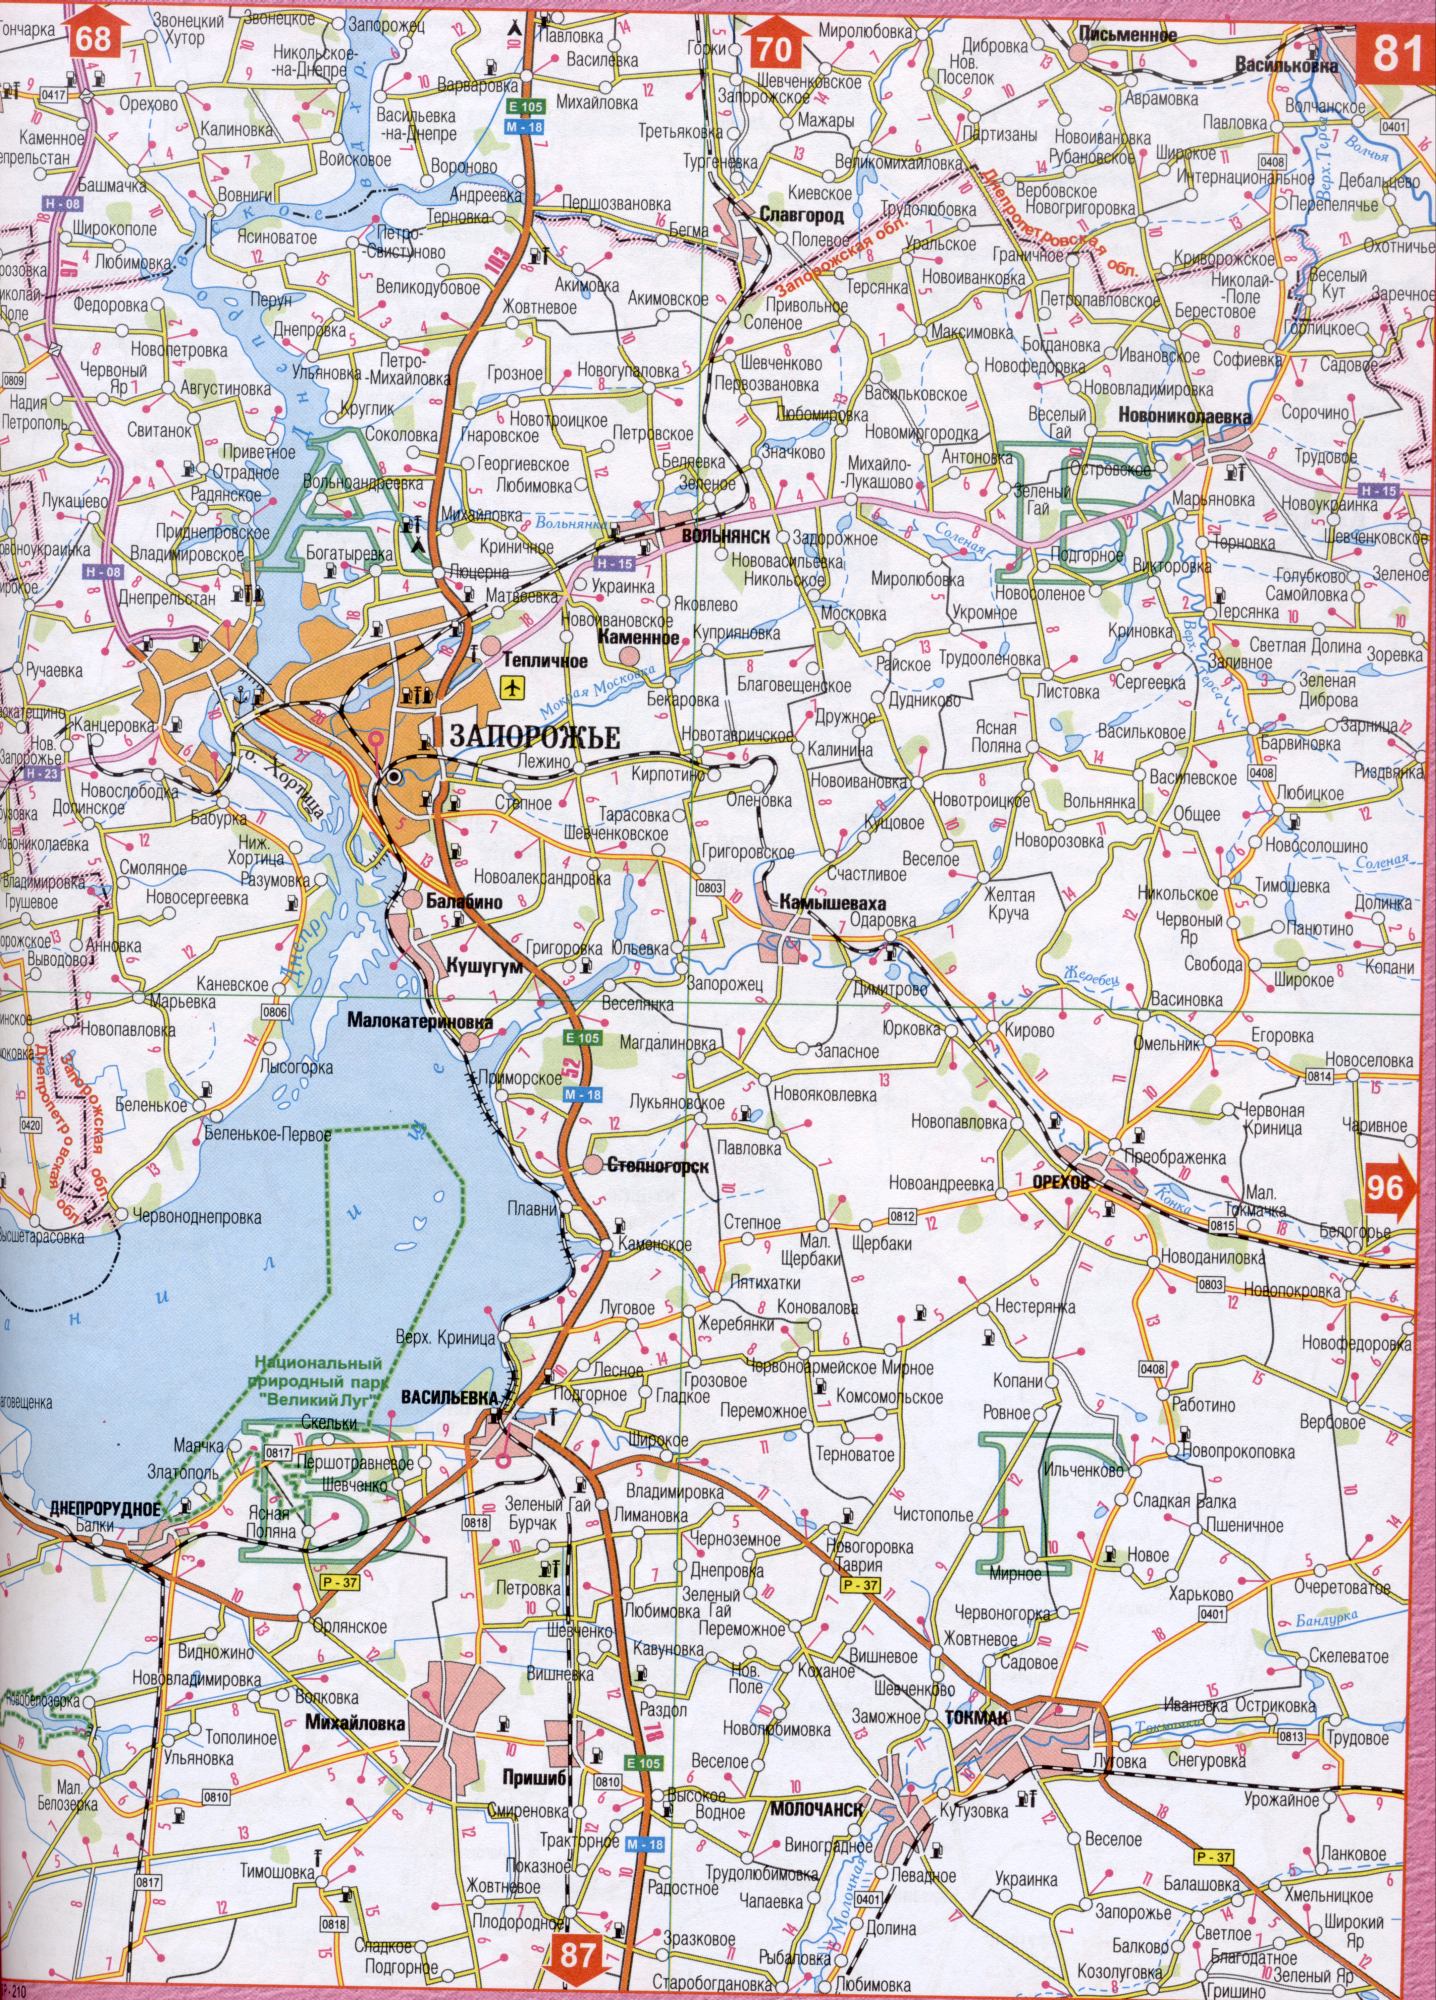 Karte von Zaporozhye Region der Ukraine. Karte von Straßen Ukraine, Region Saporoshje. Laden Sie eine detaillierte Karte von Wet Moskovka, Bandurka, Ober Ters